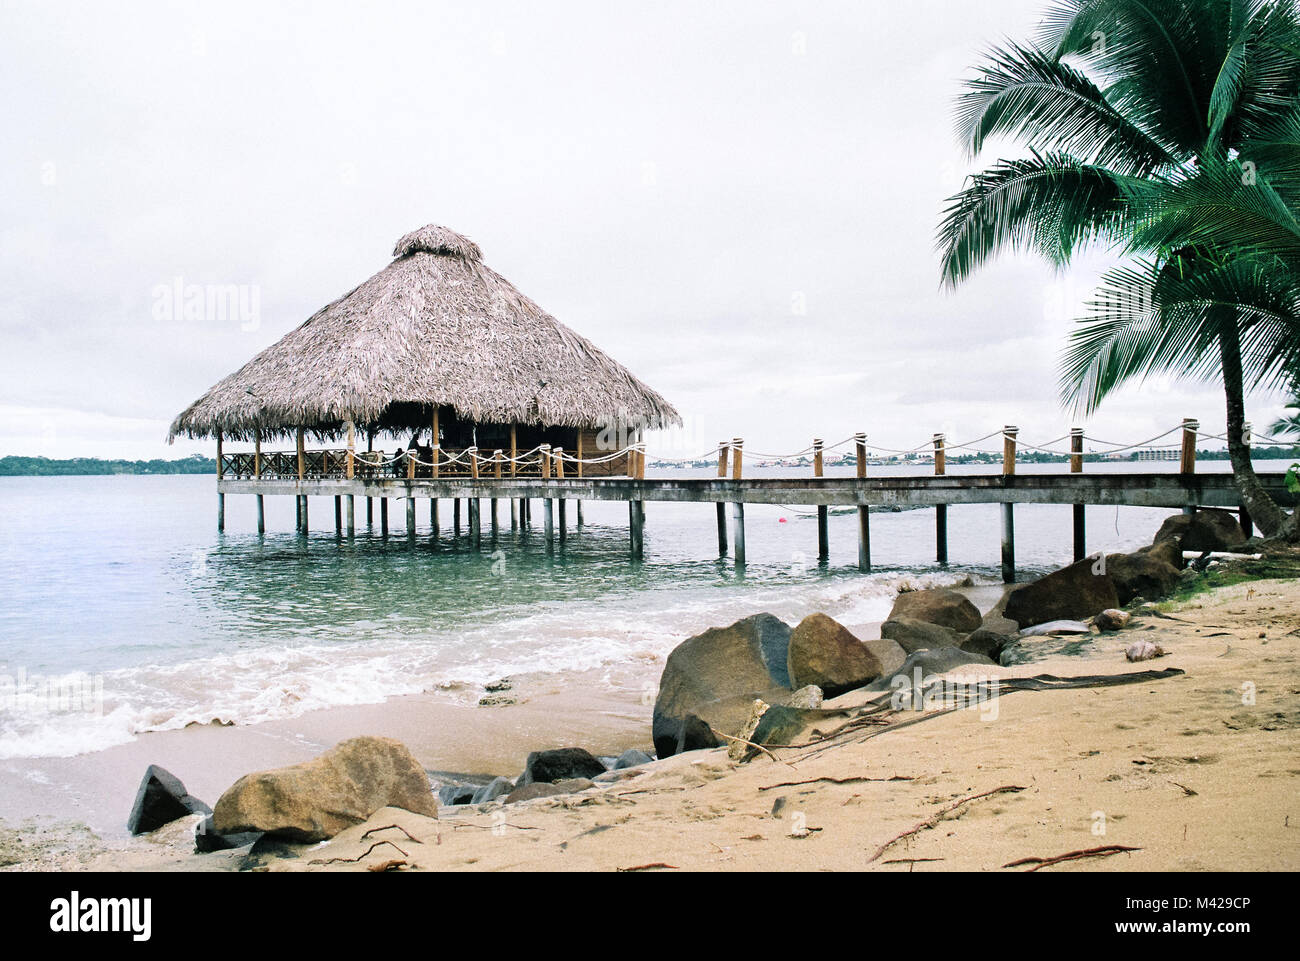 Scena tropicale in Bocas del Toro Panama. Una casa in legno su palafitte vicino alla spiaggia in mare. Foto Stock